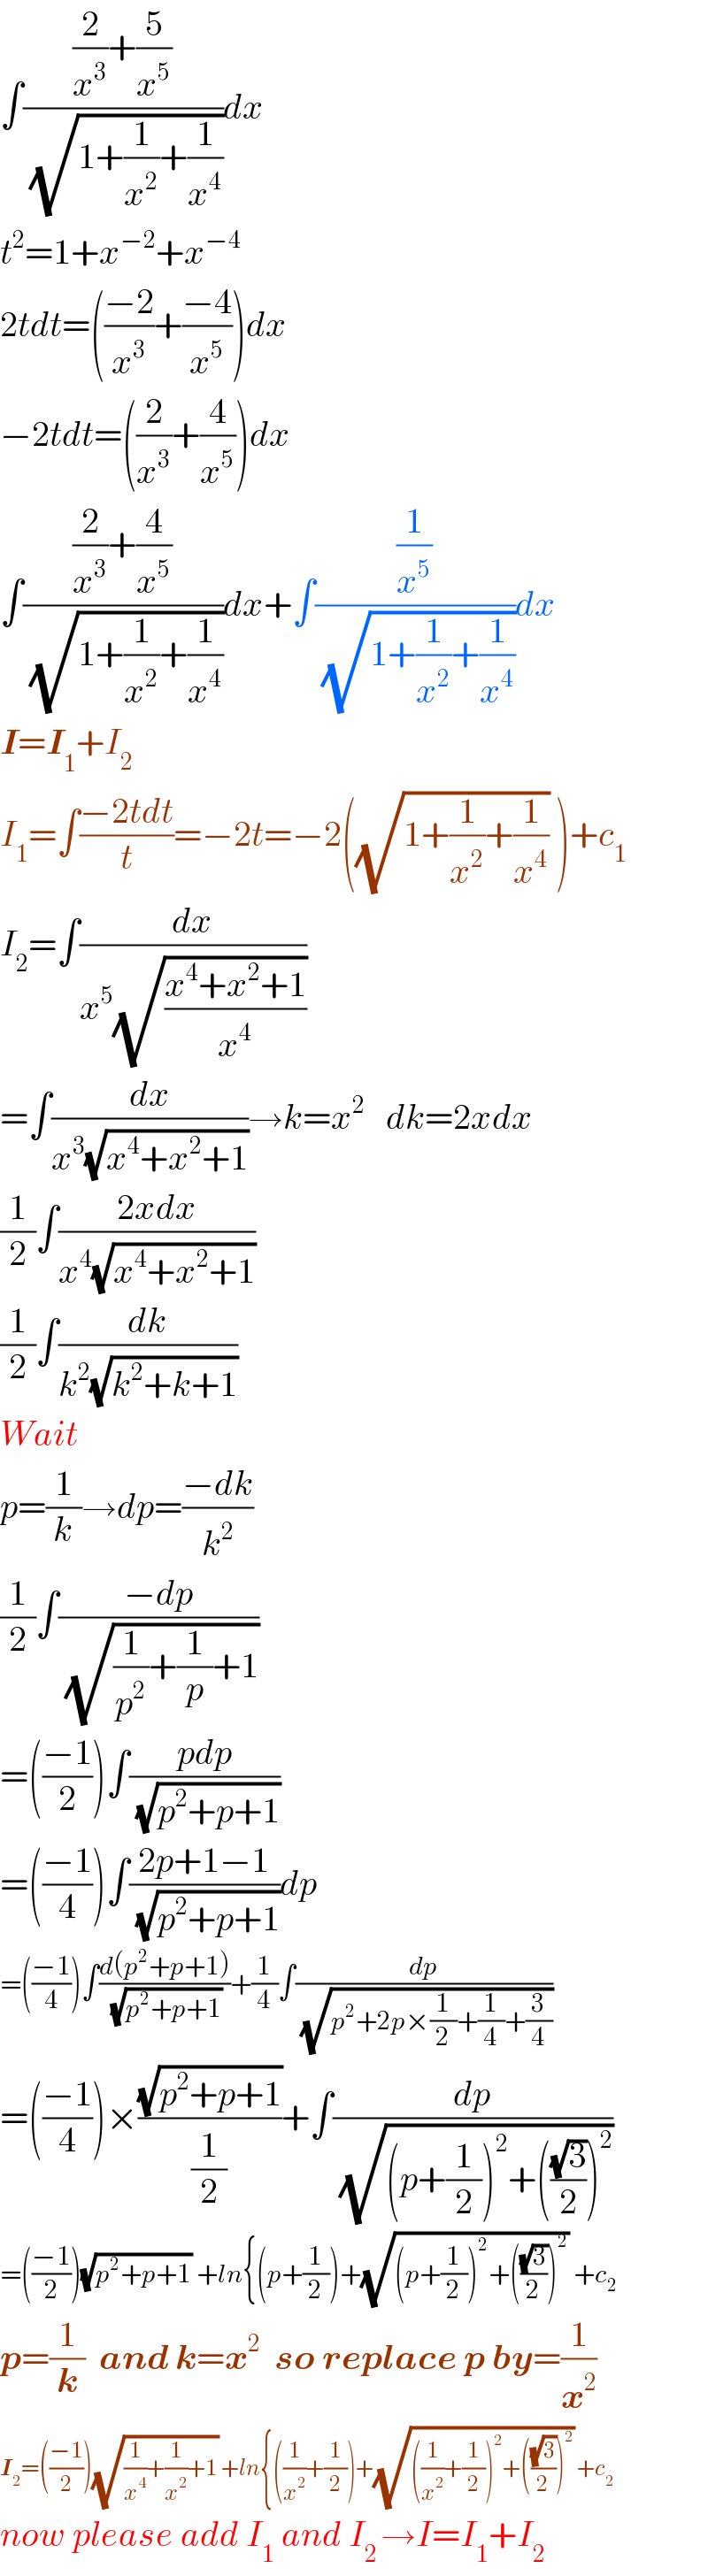 ∫(((2/x^3 )+(5/x^5 ))/( (√(1+(1/x^2 )+(1/x^4 )))))dx  t^2 =1+x^(−2) +x^(−4)   2tdt=(((−2)/x^3 )+((−4)/x^5 ))dx  −2tdt=((2/x^3 )+(4/x^5 ))dx  ∫(((2/x^3 )+(4/x^5 ))/( (√(1+(1/x^2 )+(1/x^4 )))))dx+∫((1/x^5 )/( (√(1+(1/x^2 )+(1/x^4 )))))dx  I=I_1 +I_2   I_1 =∫((−2tdt)/t)=−2t=−2((√(1+(1/x^2 )+(1/x^4 ))) )+c_1   I_2 =∫(dx/(x^5 (√((x^4 +x^2 +1)/x^4 ))))  =∫(dx/(x^3 (√(x^4 +x^2 +1))))→k=x^2    dk=2xdx  (1/2)∫((2xdx)/(x^4 (√(x^4 +x^2 +1))))  (1/2)∫(dk/(k^2 (√(k^2 +k+1))))  Wait  p=(1/k)→dp=((−dk)/k^2 )  (1/2)∫((−dp)/( (√((1/p^2 )+(1/p)+1))))  =(((−1)/2))∫((pdp)/( (√(p^2 +p+1))))  =(((−1)/4))∫((2p+1−1)/( (√(p^2 +p+1))))dp  =(((−1)/4))∫((d(p^2 +p+1))/( (√(p^2 +p+1))))+(1/4)∫(dp/( (√(p^2 +2p×(1/2)+(1/4)+(3/4)))))  =(((−1)/4))×((√(p^2 +p+1))/(1/2))+∫(dp/( (√((p+(1/2))^2 +(((√3)/2))^2 ))))  =(((−1)/2))(√(p^2 +p+1)) +ln{(p+(1/2))+(√((p+(1/2))^2 +(((√3)/2))^2 )) +c_2   p=(1/k)  and k=x^2   so replace p by=(1/x^2 )  I_2 =(((−1)/2))(√((1/x^4 )+(1/x^2 )+1)) +ln{((1/x^2 )+(1/2))+(√(((1/x^2 )+(1/2))^2 +(((√3)/2))^2 )) +c_2   now please add I_1  and I_(2 ) →I=I_1 +I_2   